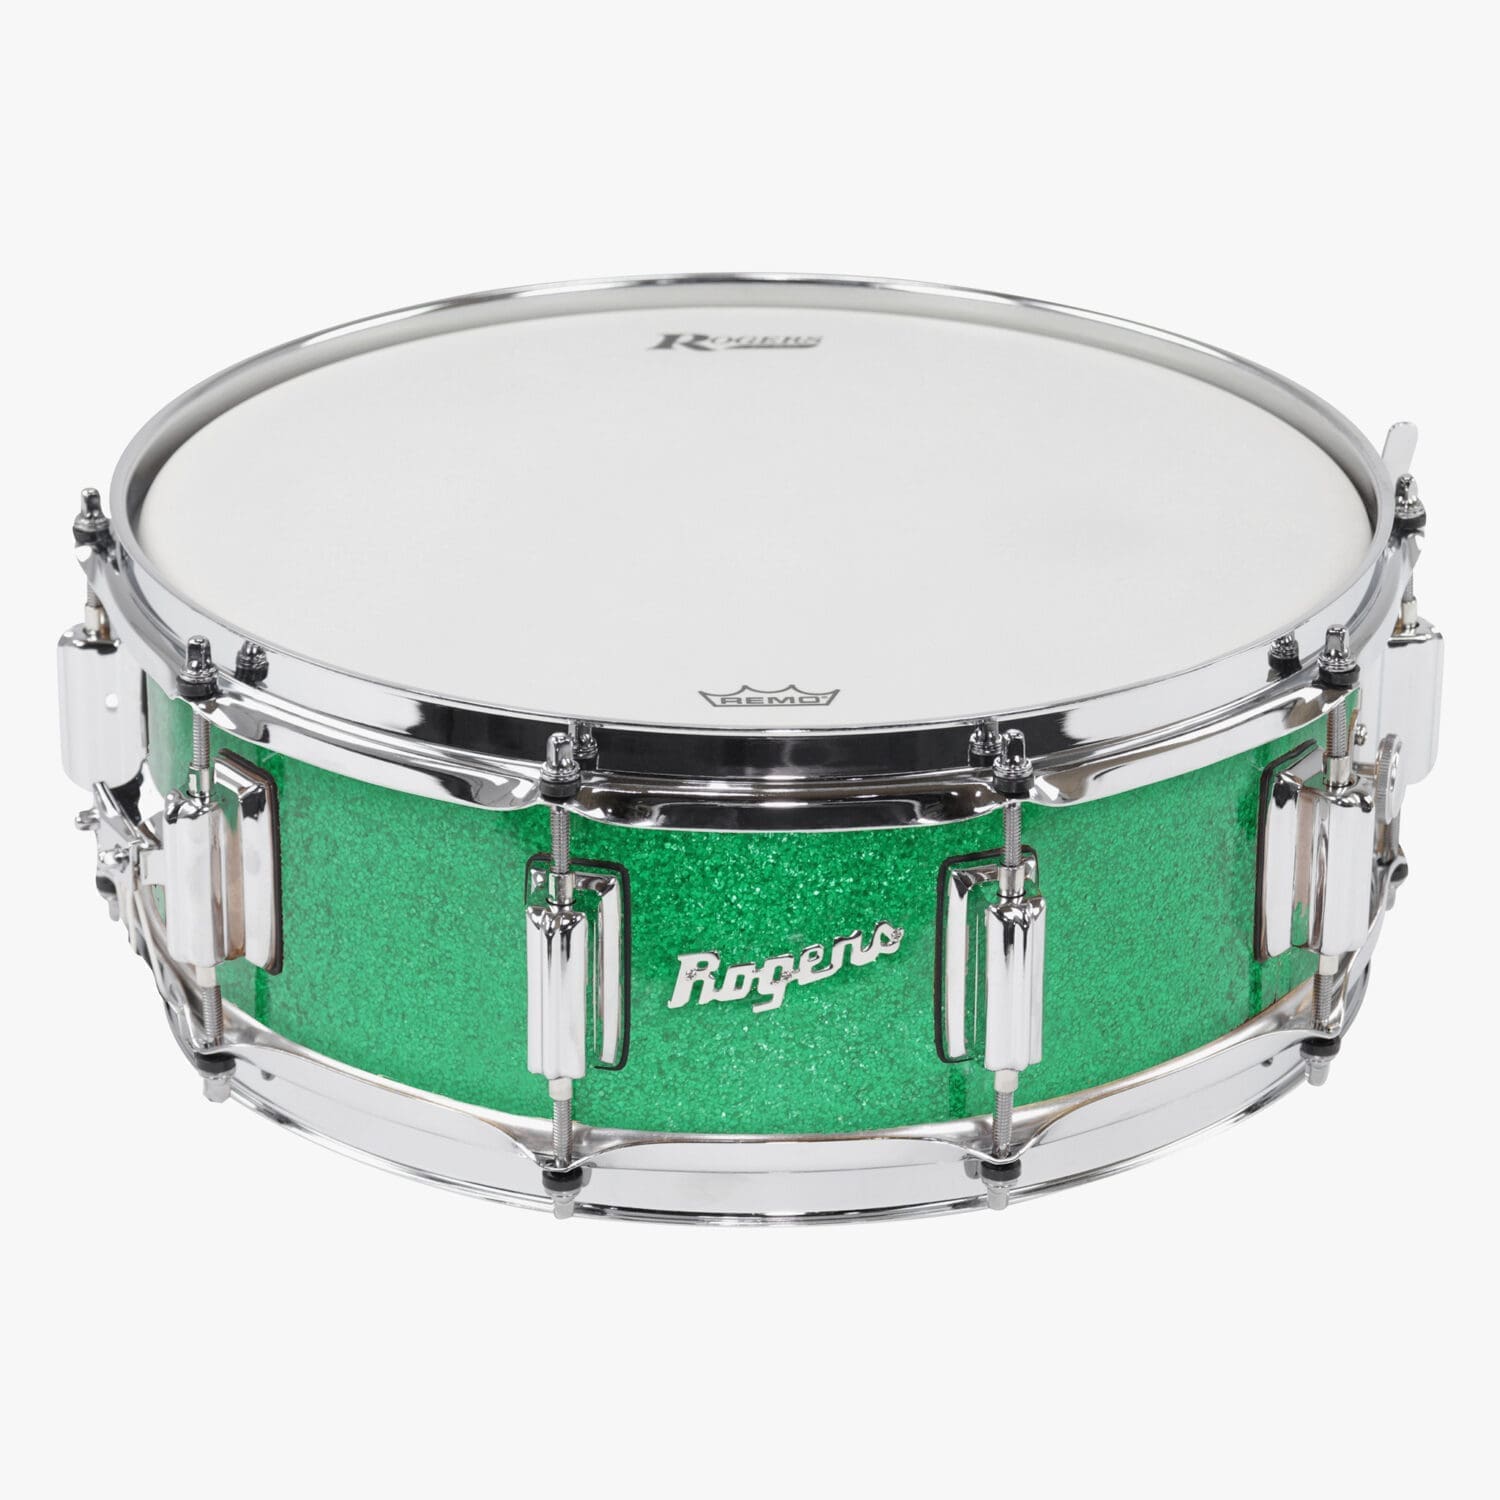 Green Sparkle Wrap SuperTen Snare Drum